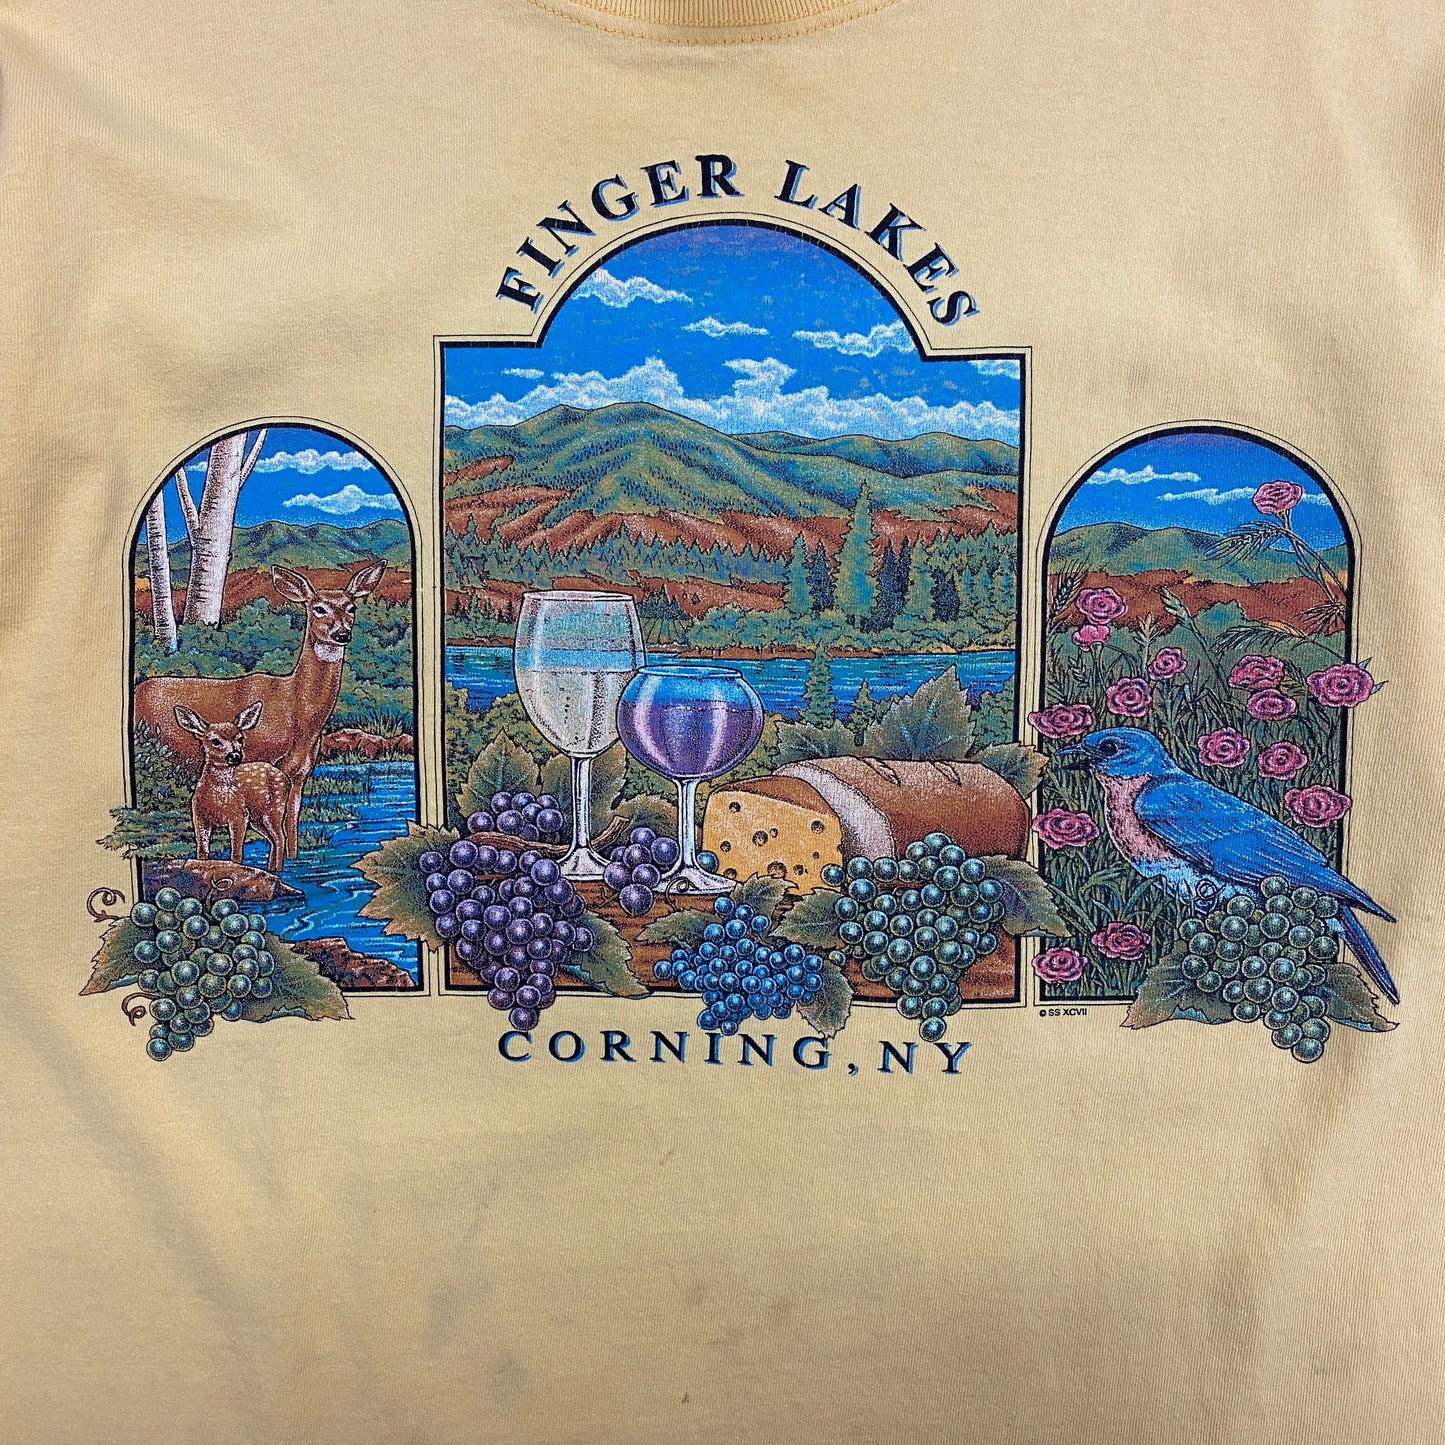 Vintage Finger Lakes: Corning NY Tee - Size Large